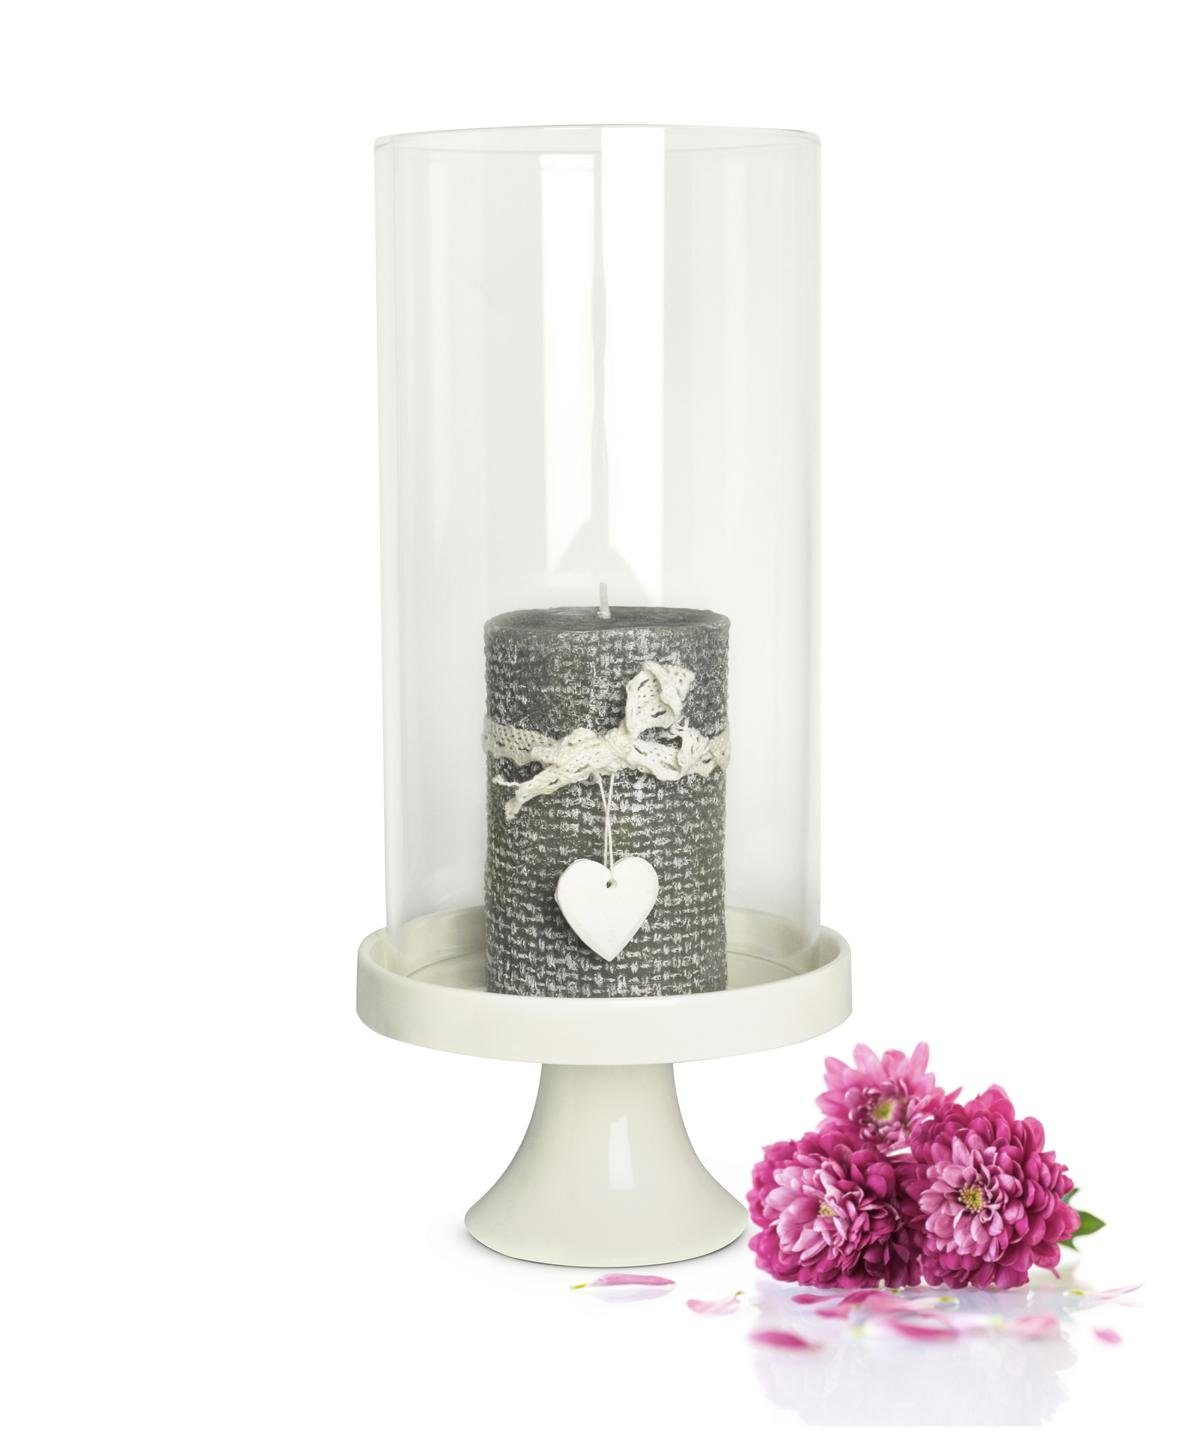 Sendez Windlicht Glaszylinder mit Porzellanteller Kerzenhalter Tischdeko Kerzenständer